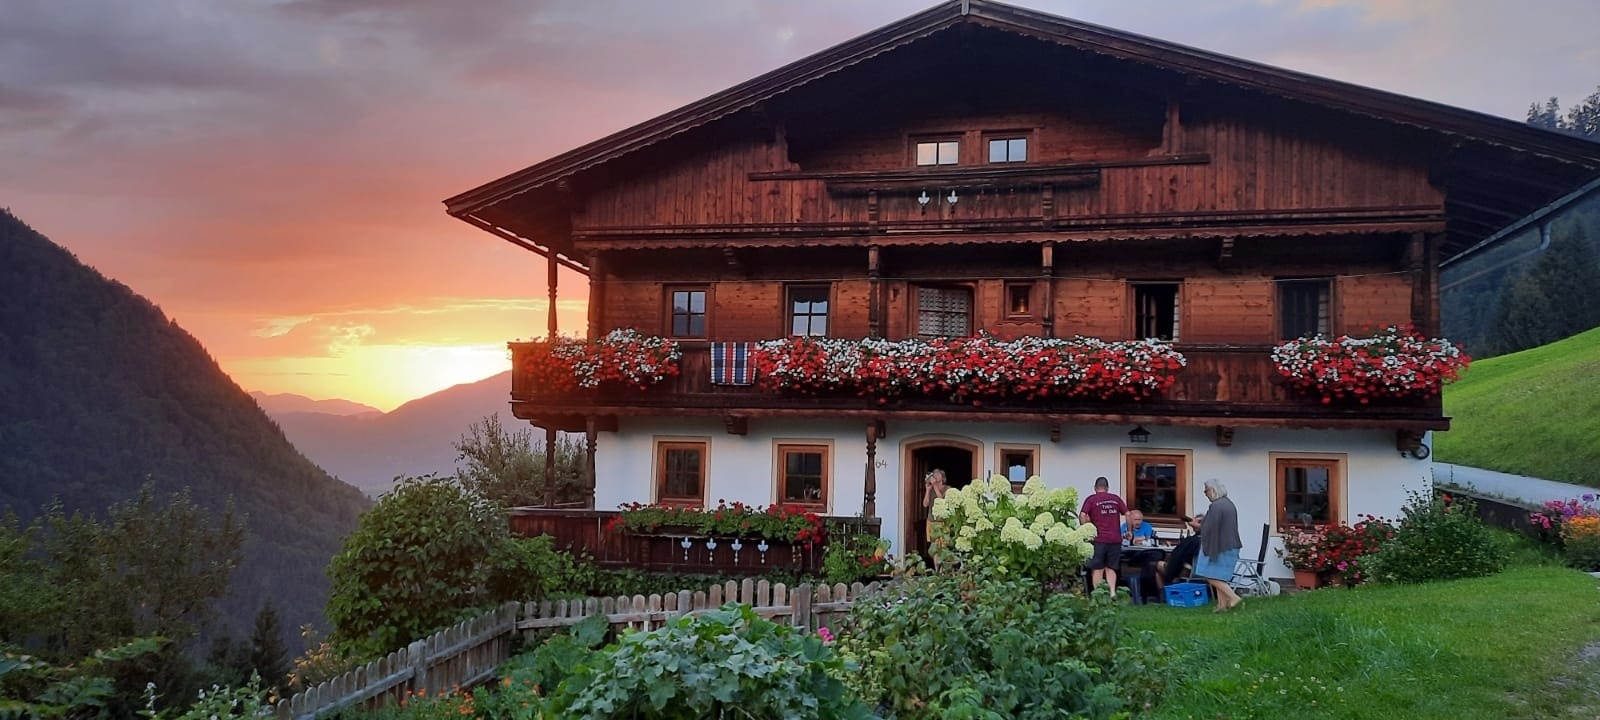 Wimmers Hundsegghof (WILD001) Ferienwohnung in Österreich